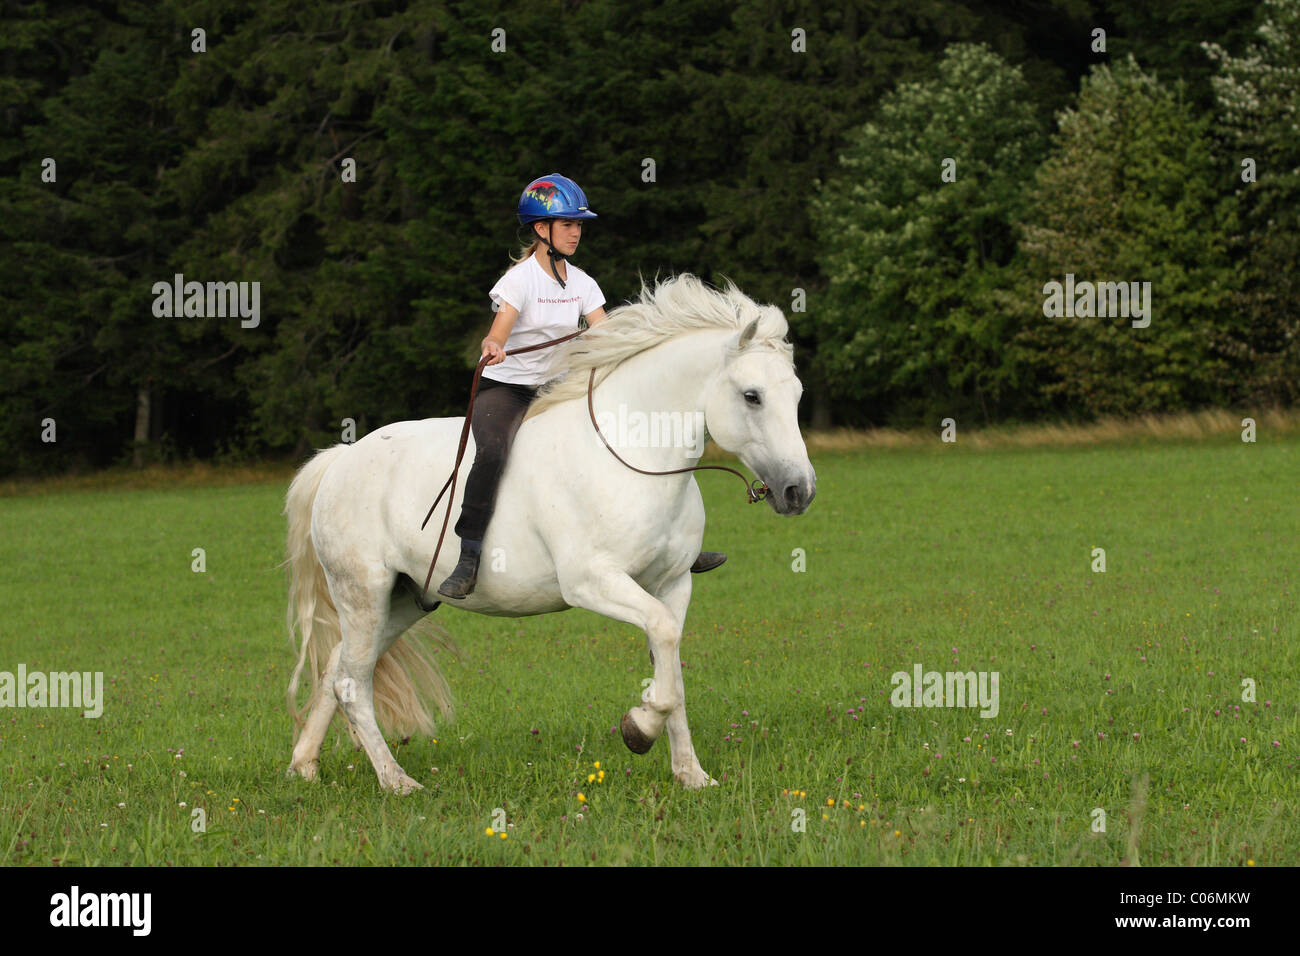 riding without saddle Stock Photo